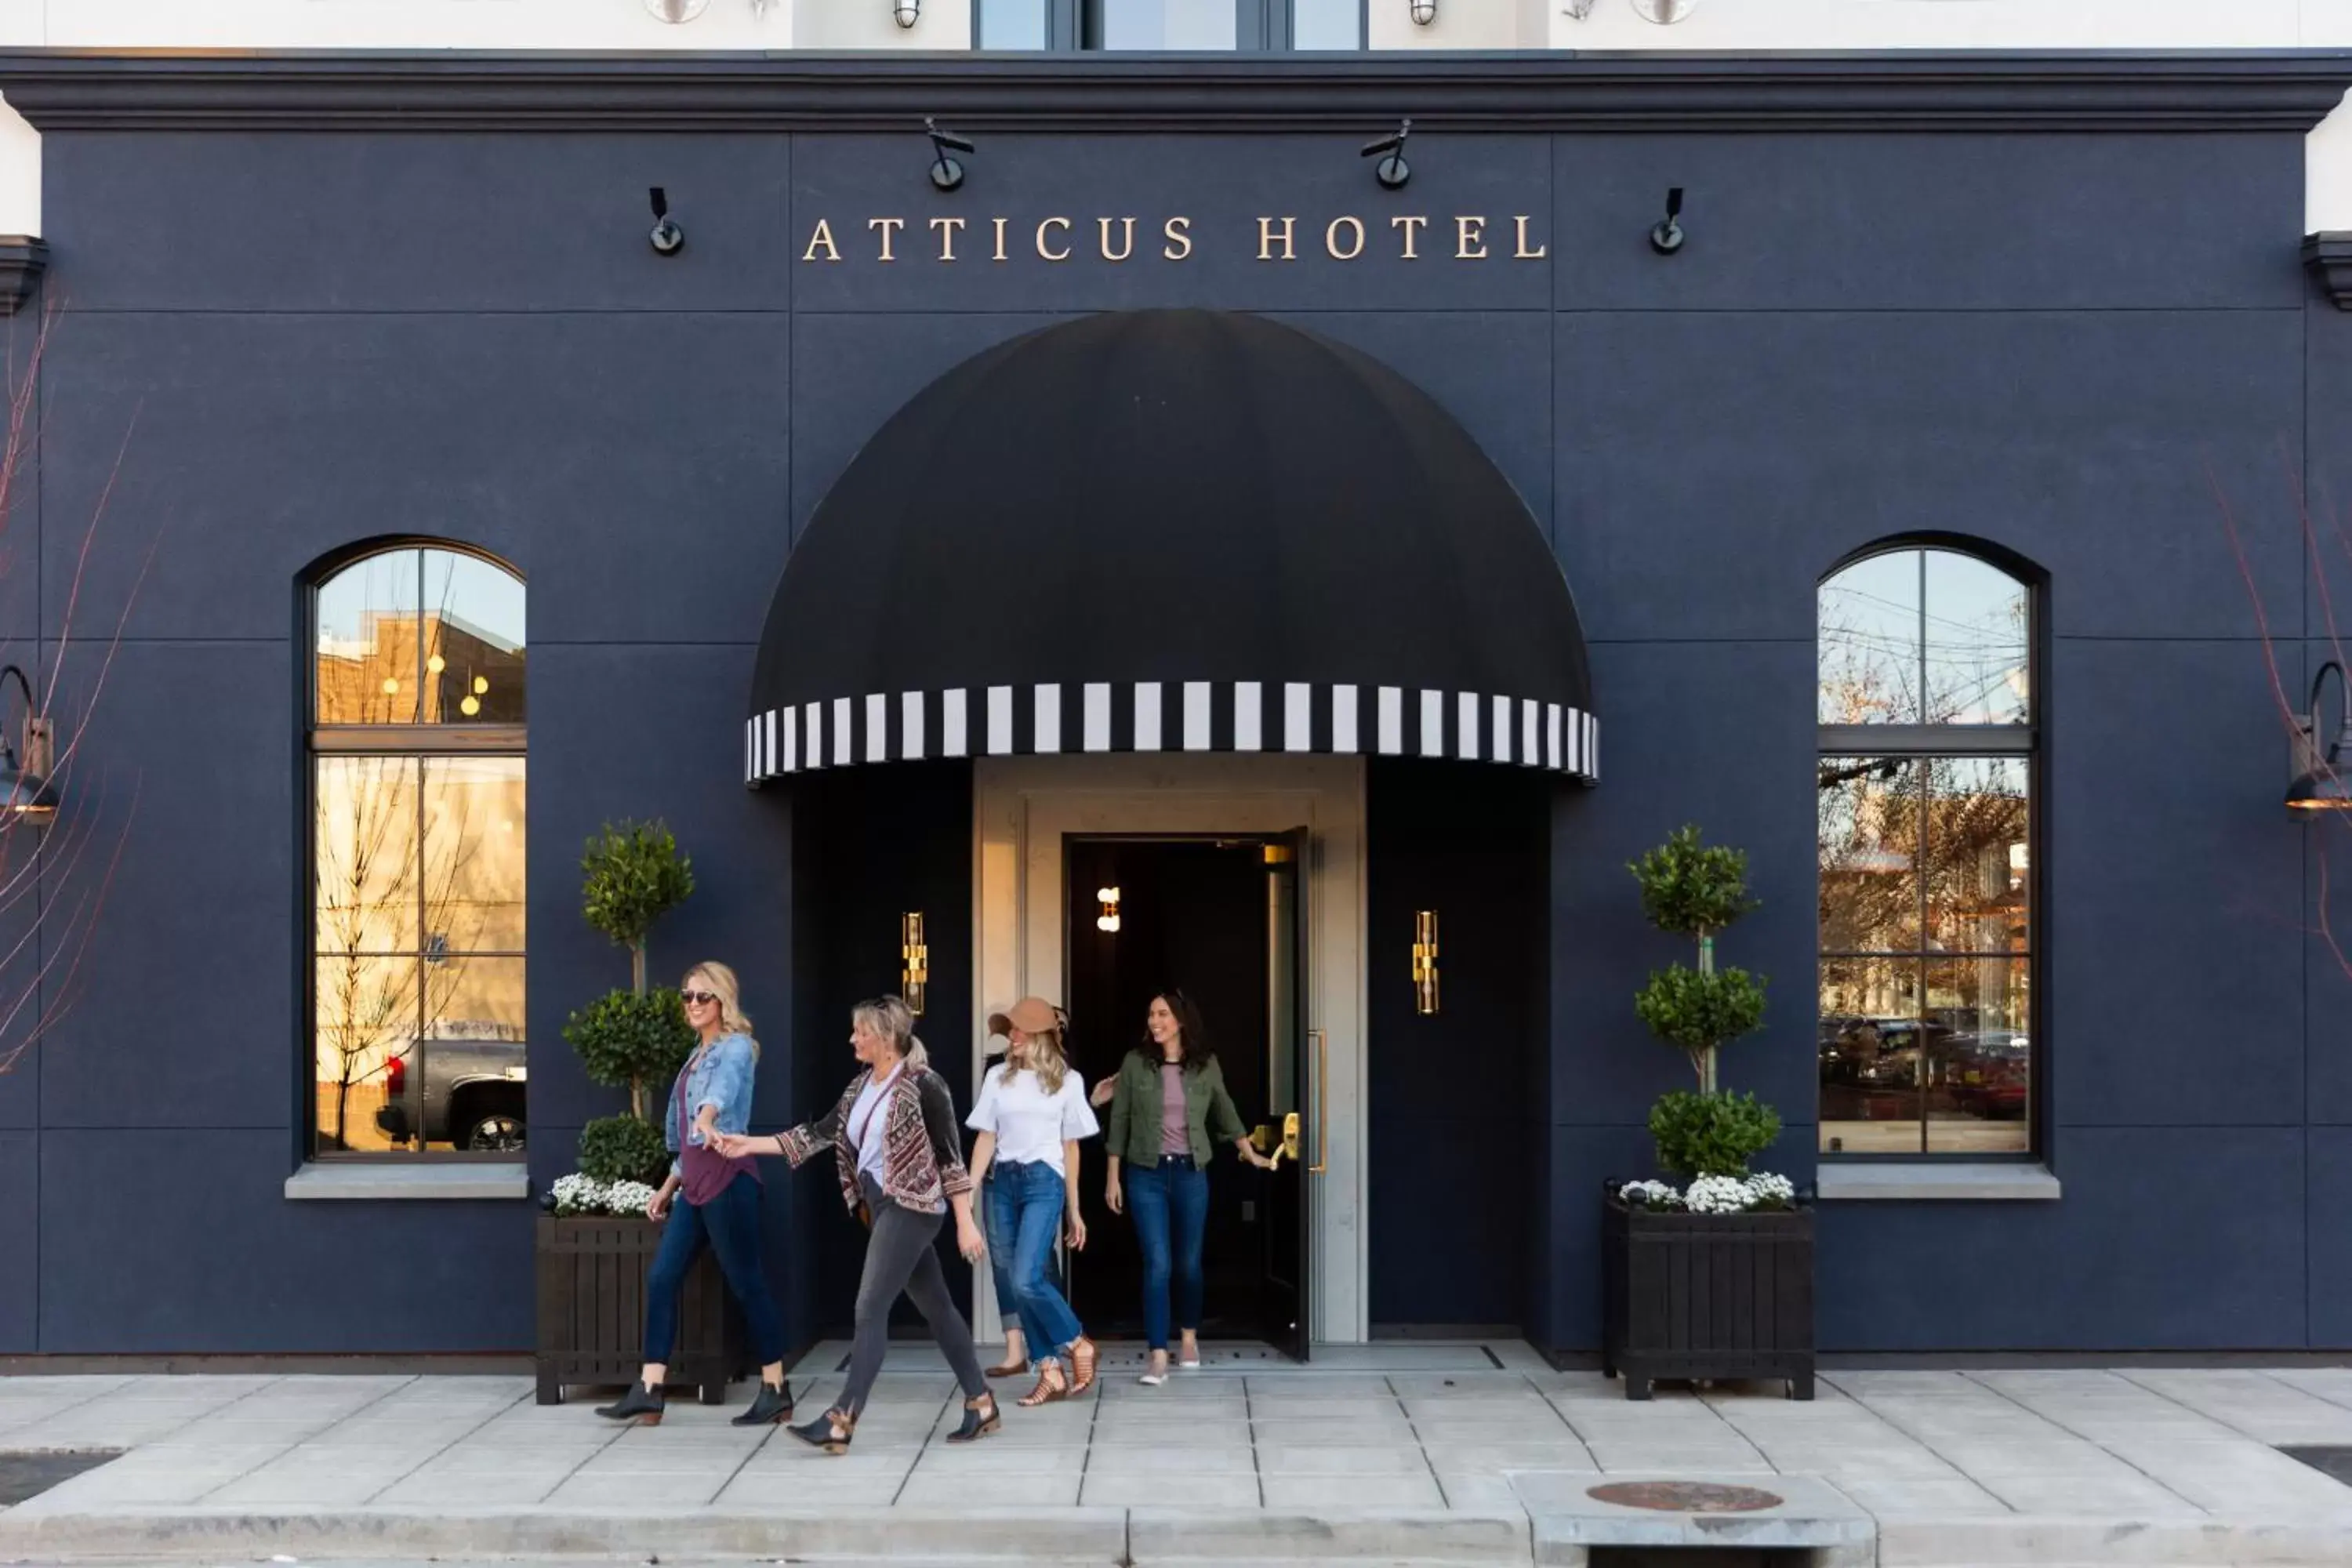 Facade/entrance in Atticus Hotel